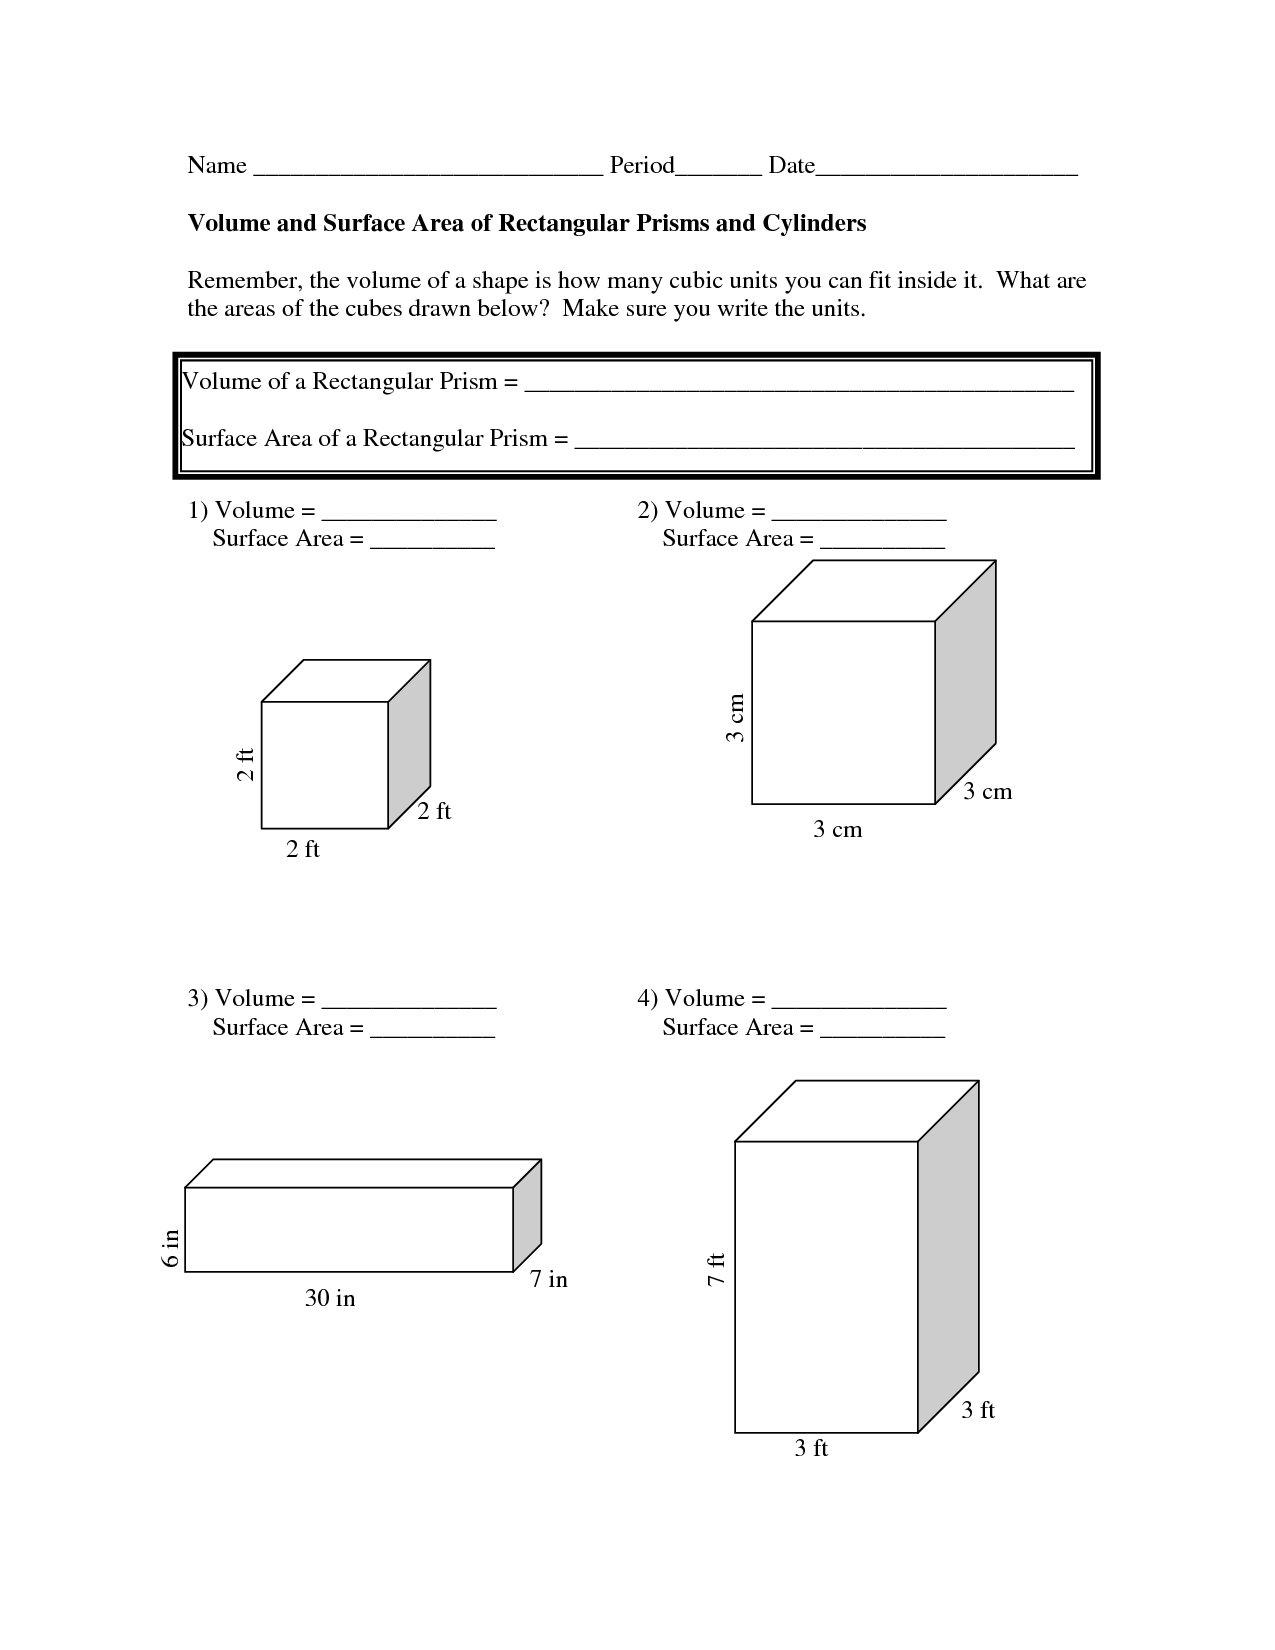 volume-rectangular-prism-worksheet